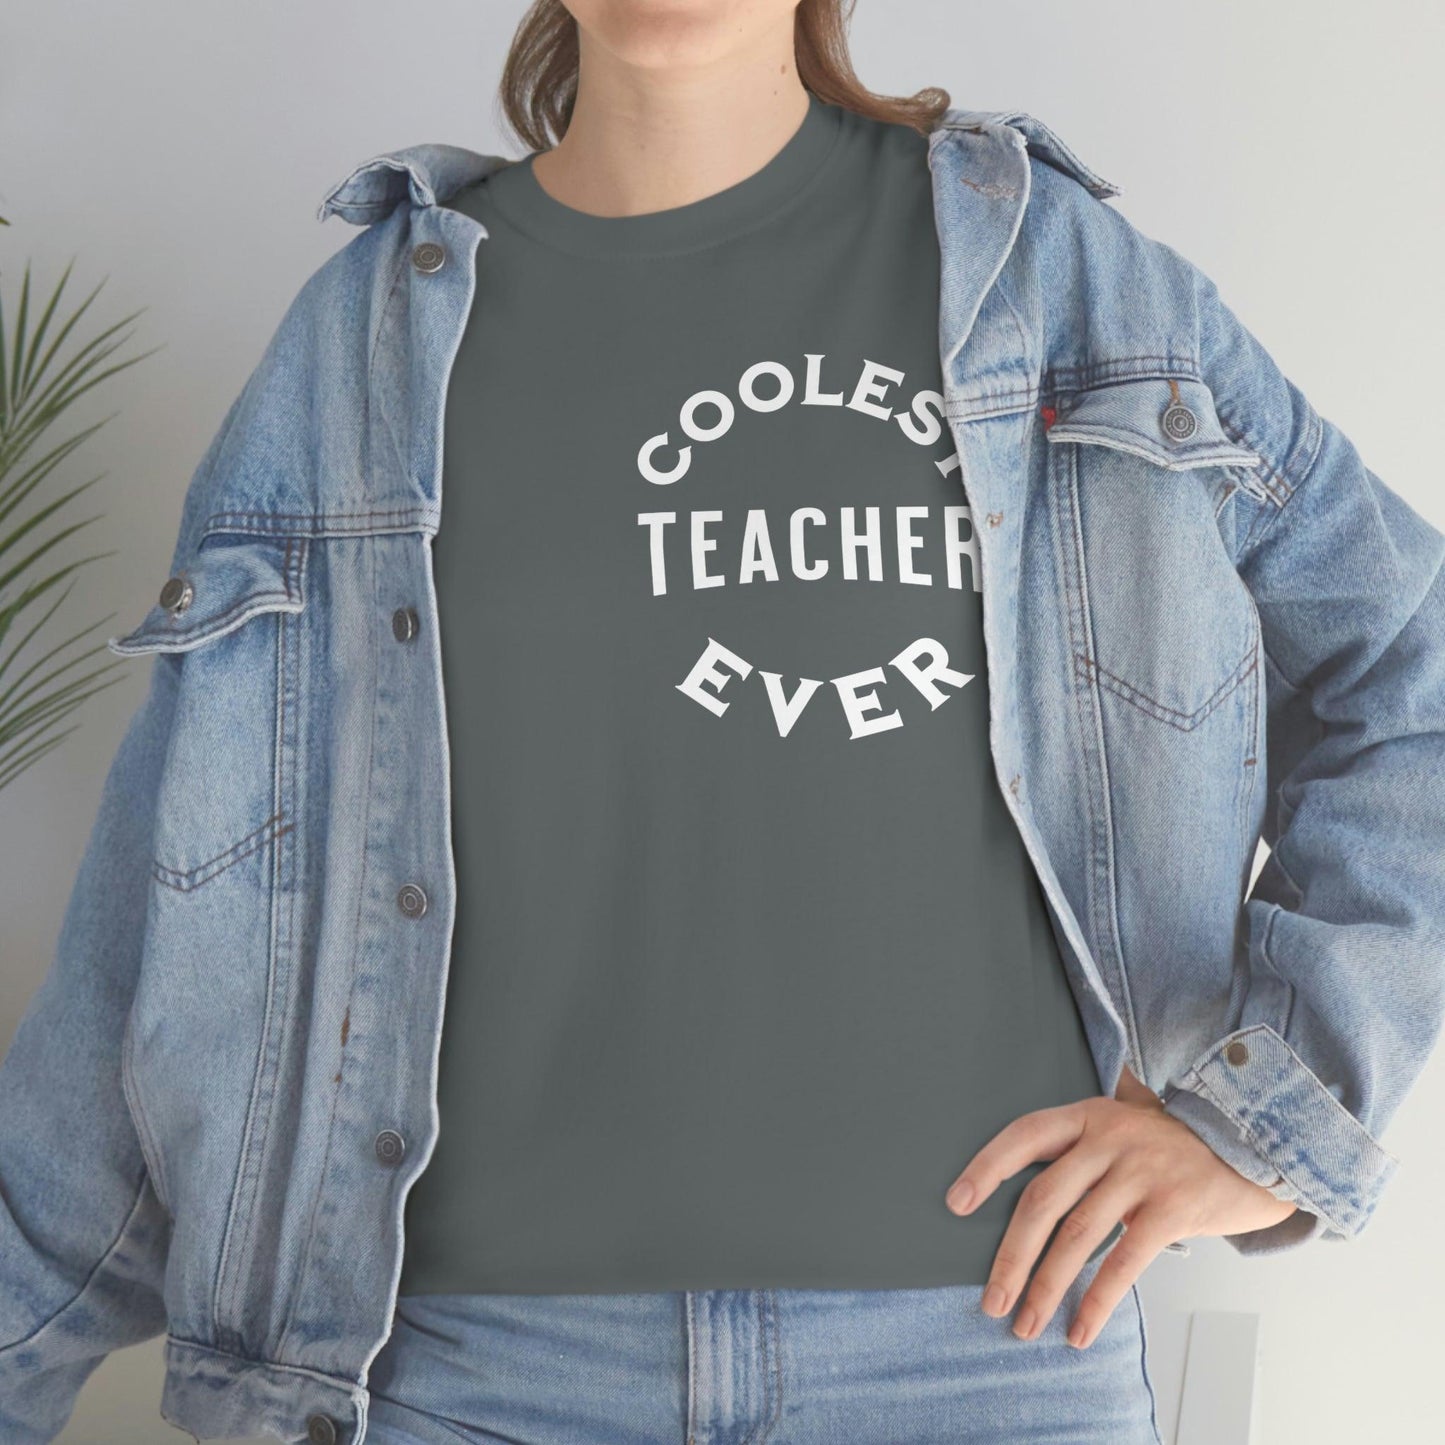 Coolest Teacher Ever Shirt - gift for teachers - teacher appreciation gift